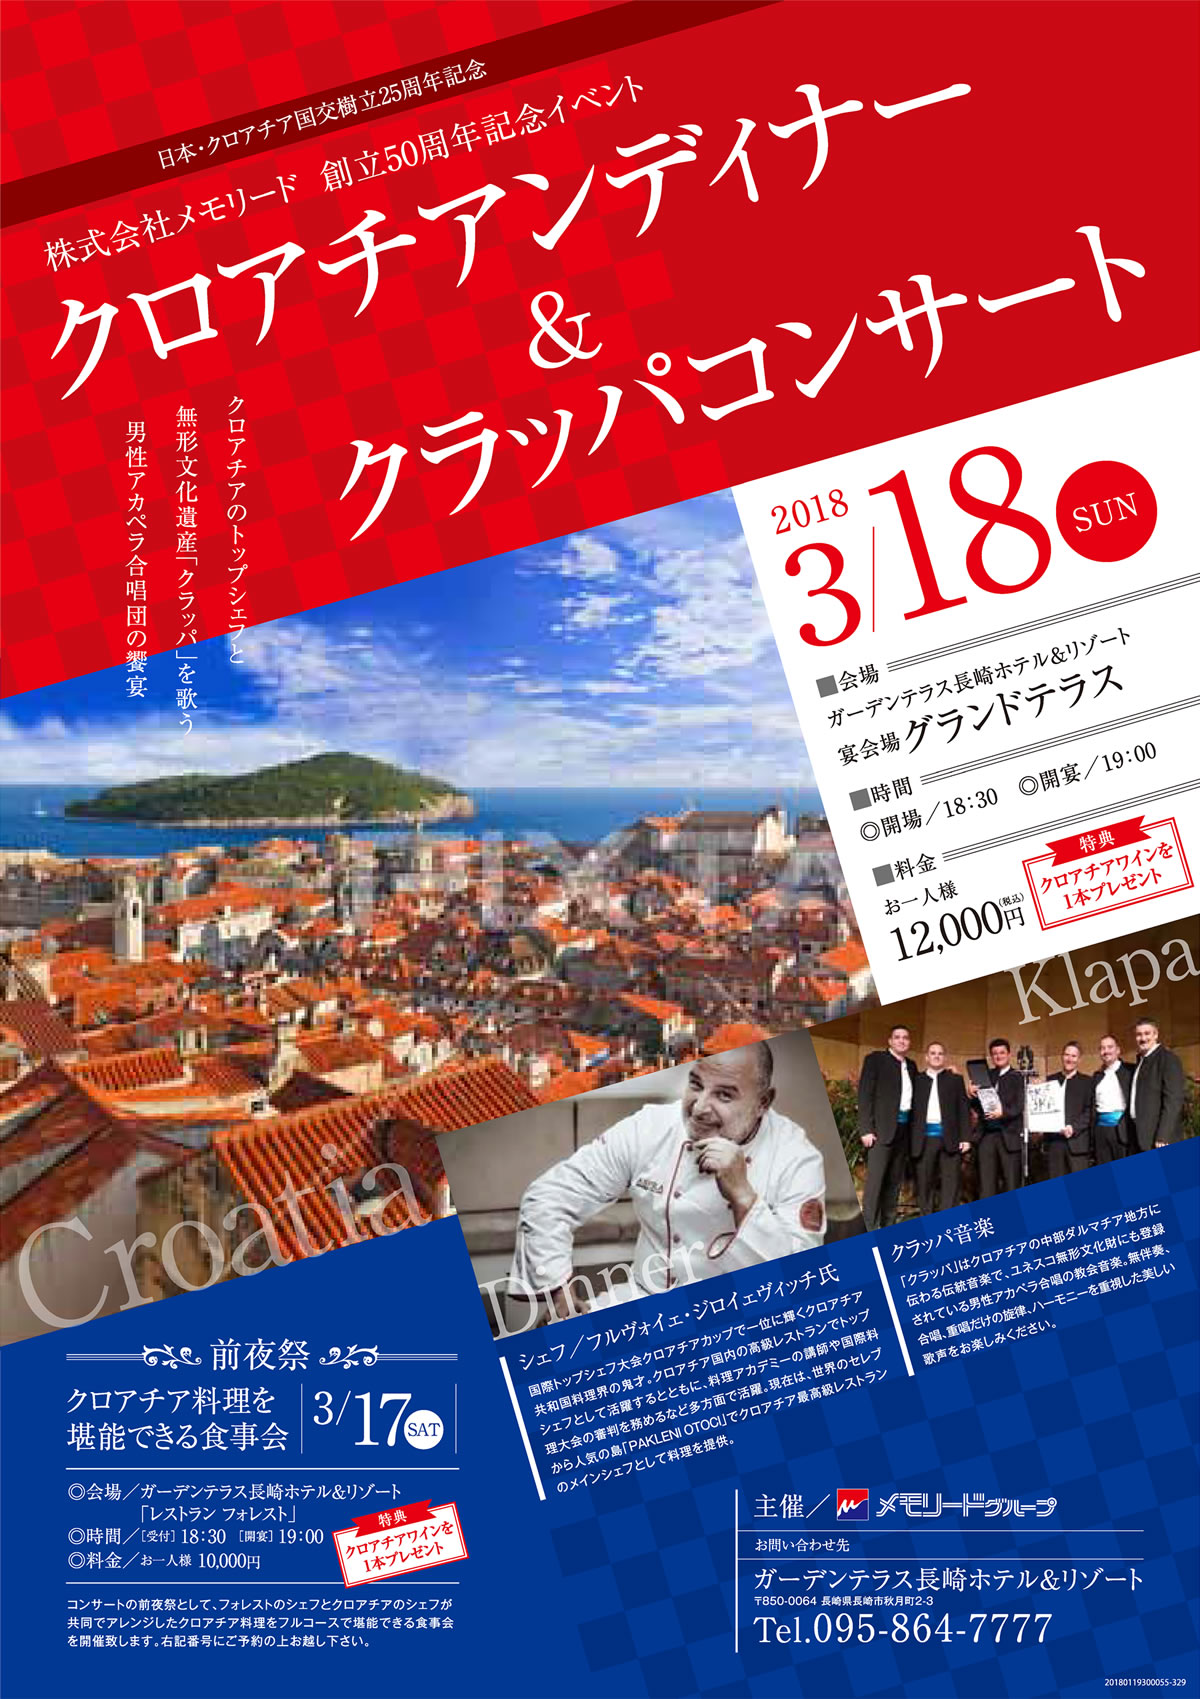 日本クロアチア外交関係樹立25周年記念イベント in 長崎